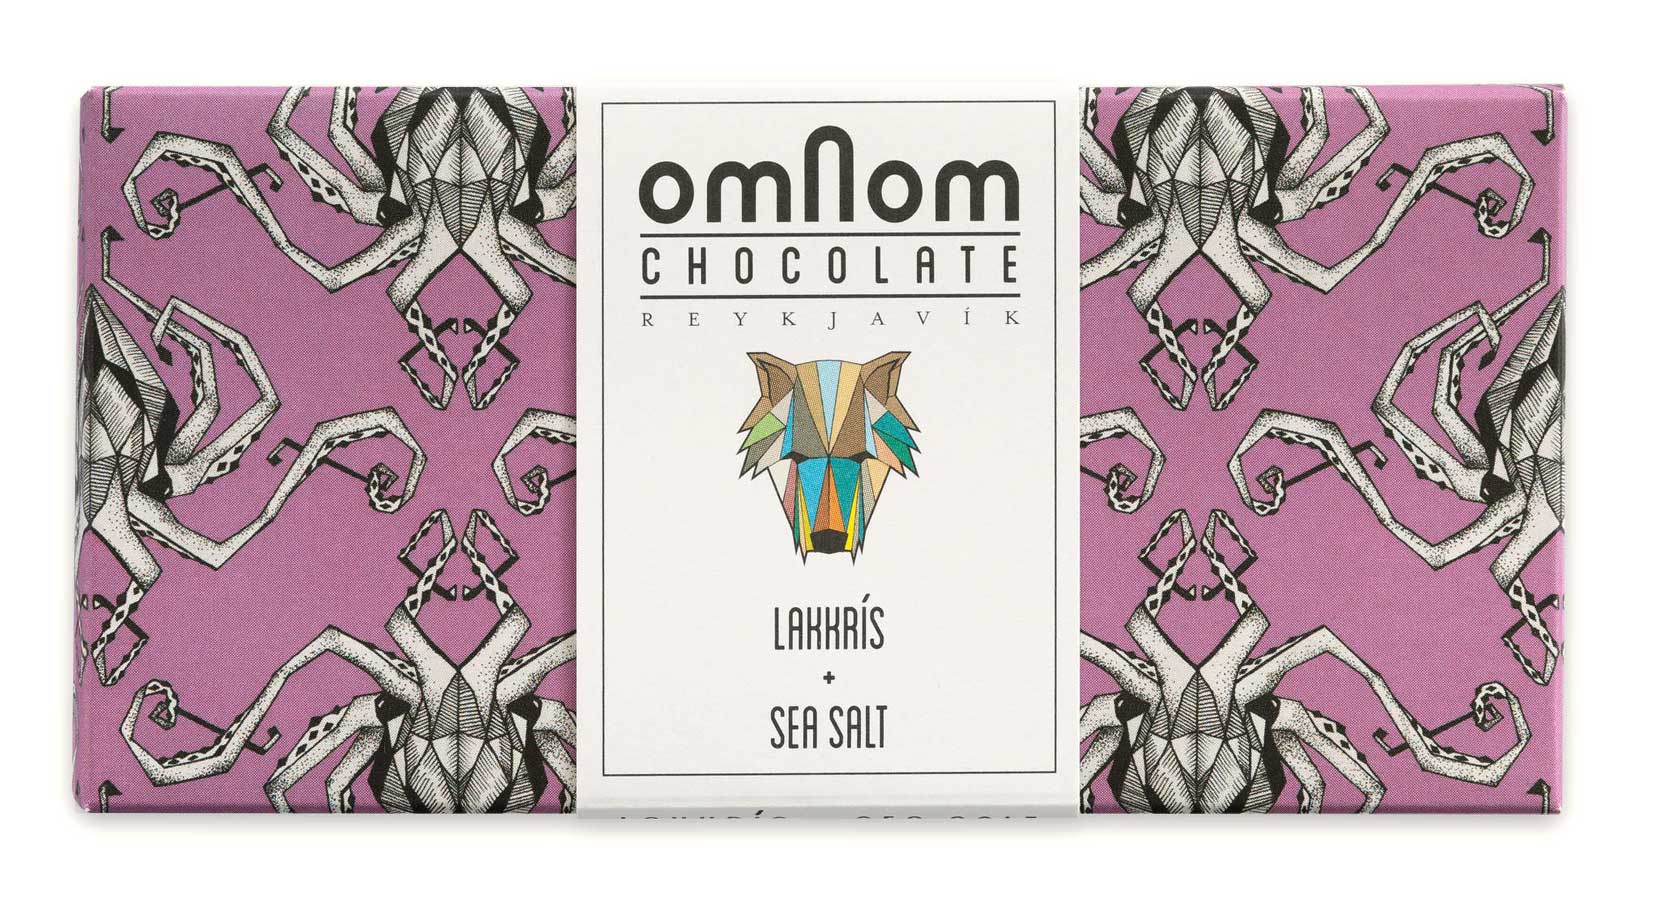 Verpackung der Lakritz-Meersalz Schokolade von Omnom in Lila mit Kraken-Muster